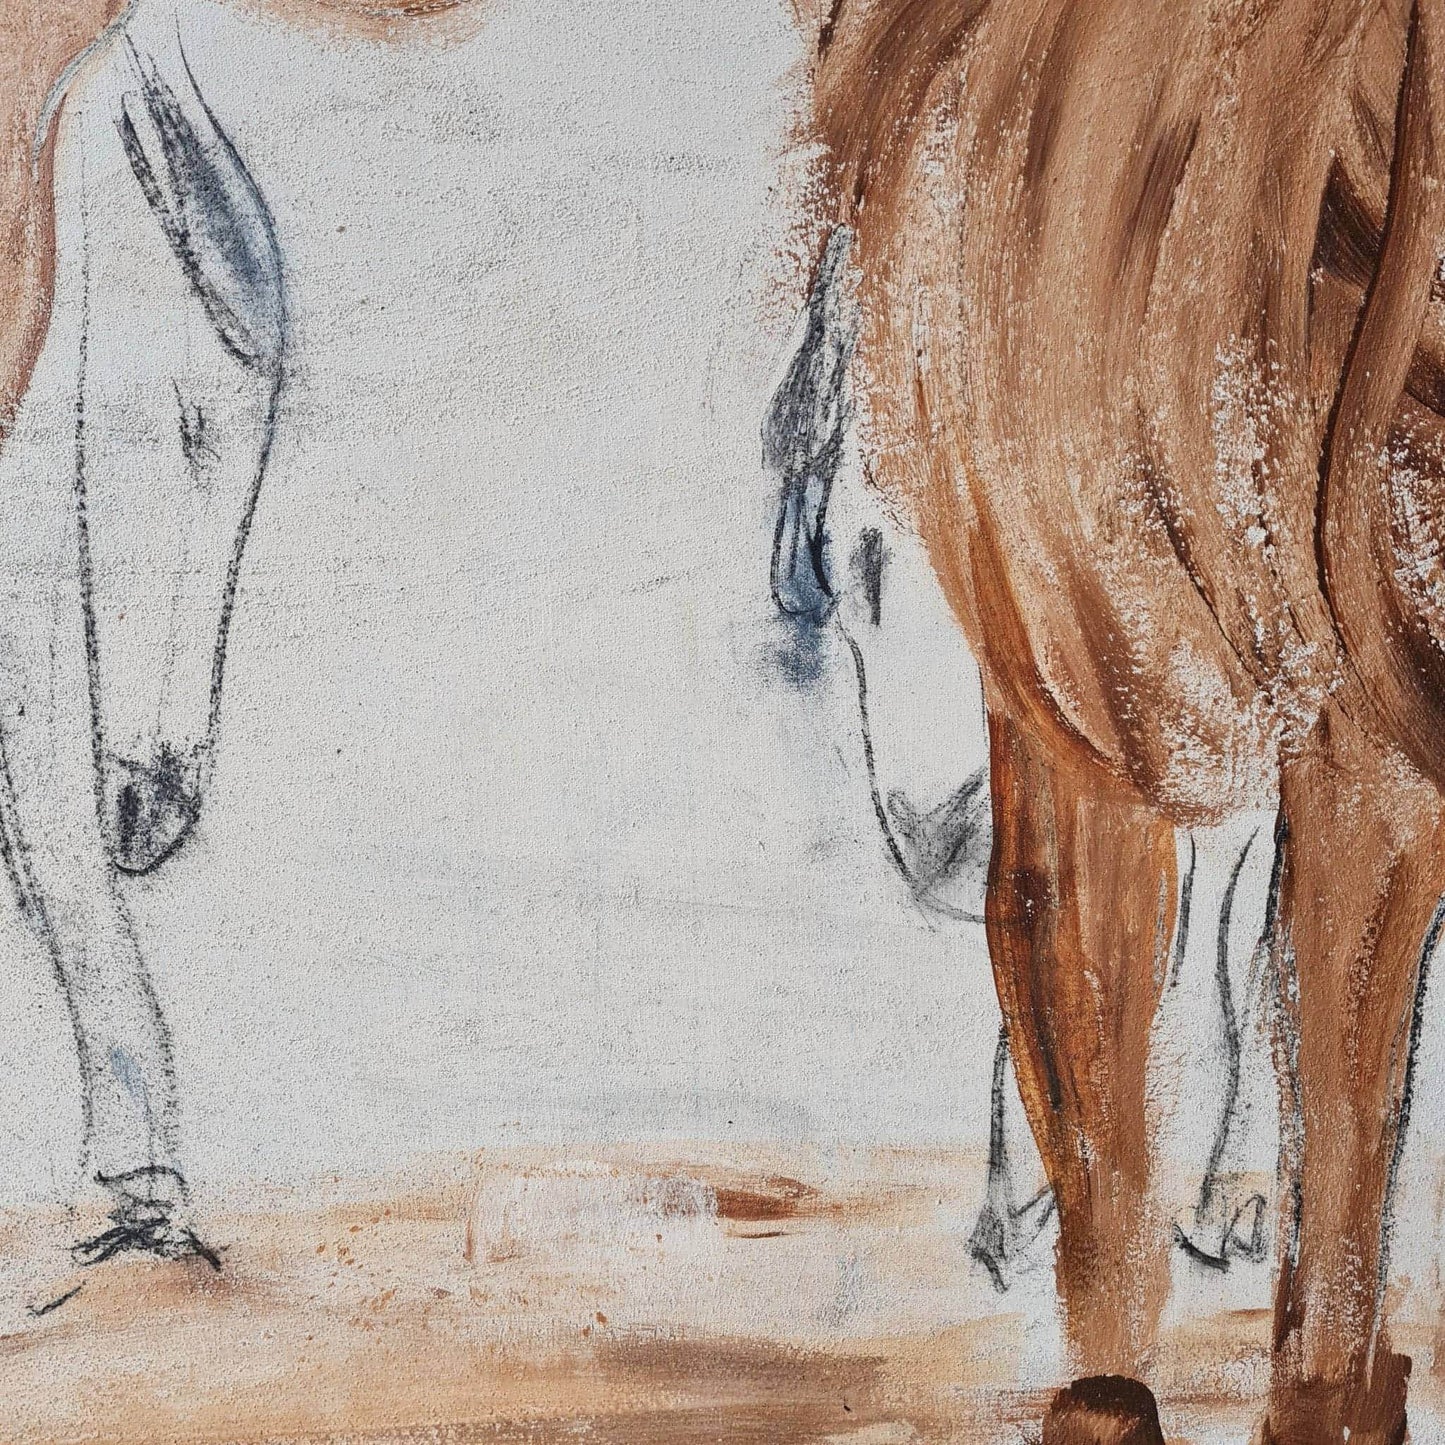 VORHANDEN / großes Pferde Bild / Elterliche Fürsorge / xxl / Art Abstrakte Bilder & moderne Auftragsmalerei, abstrakte große bilder online kaufen, Auftrags Malere